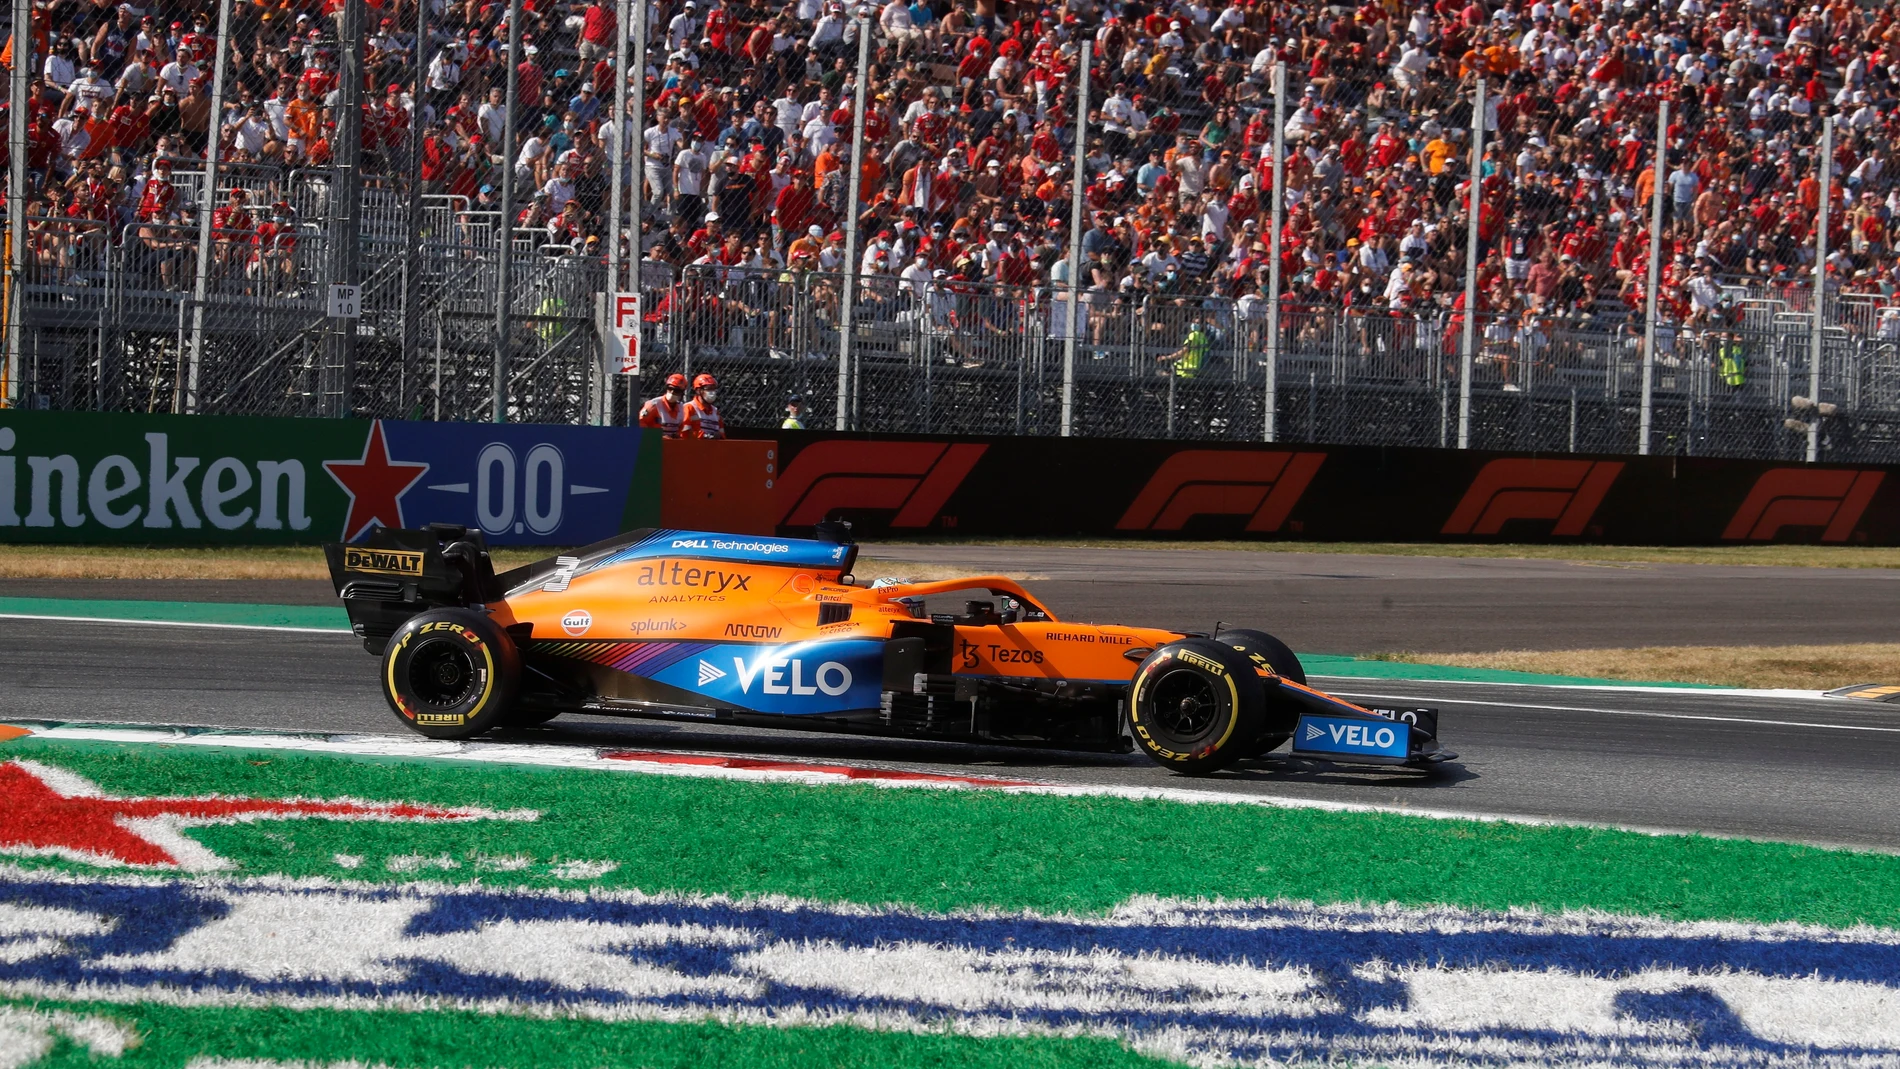 Doblete de McLaren en Monza en una carrera marcada por el accidente de Verstappen y Hamilton, Sainz 6º y Alonso 8º